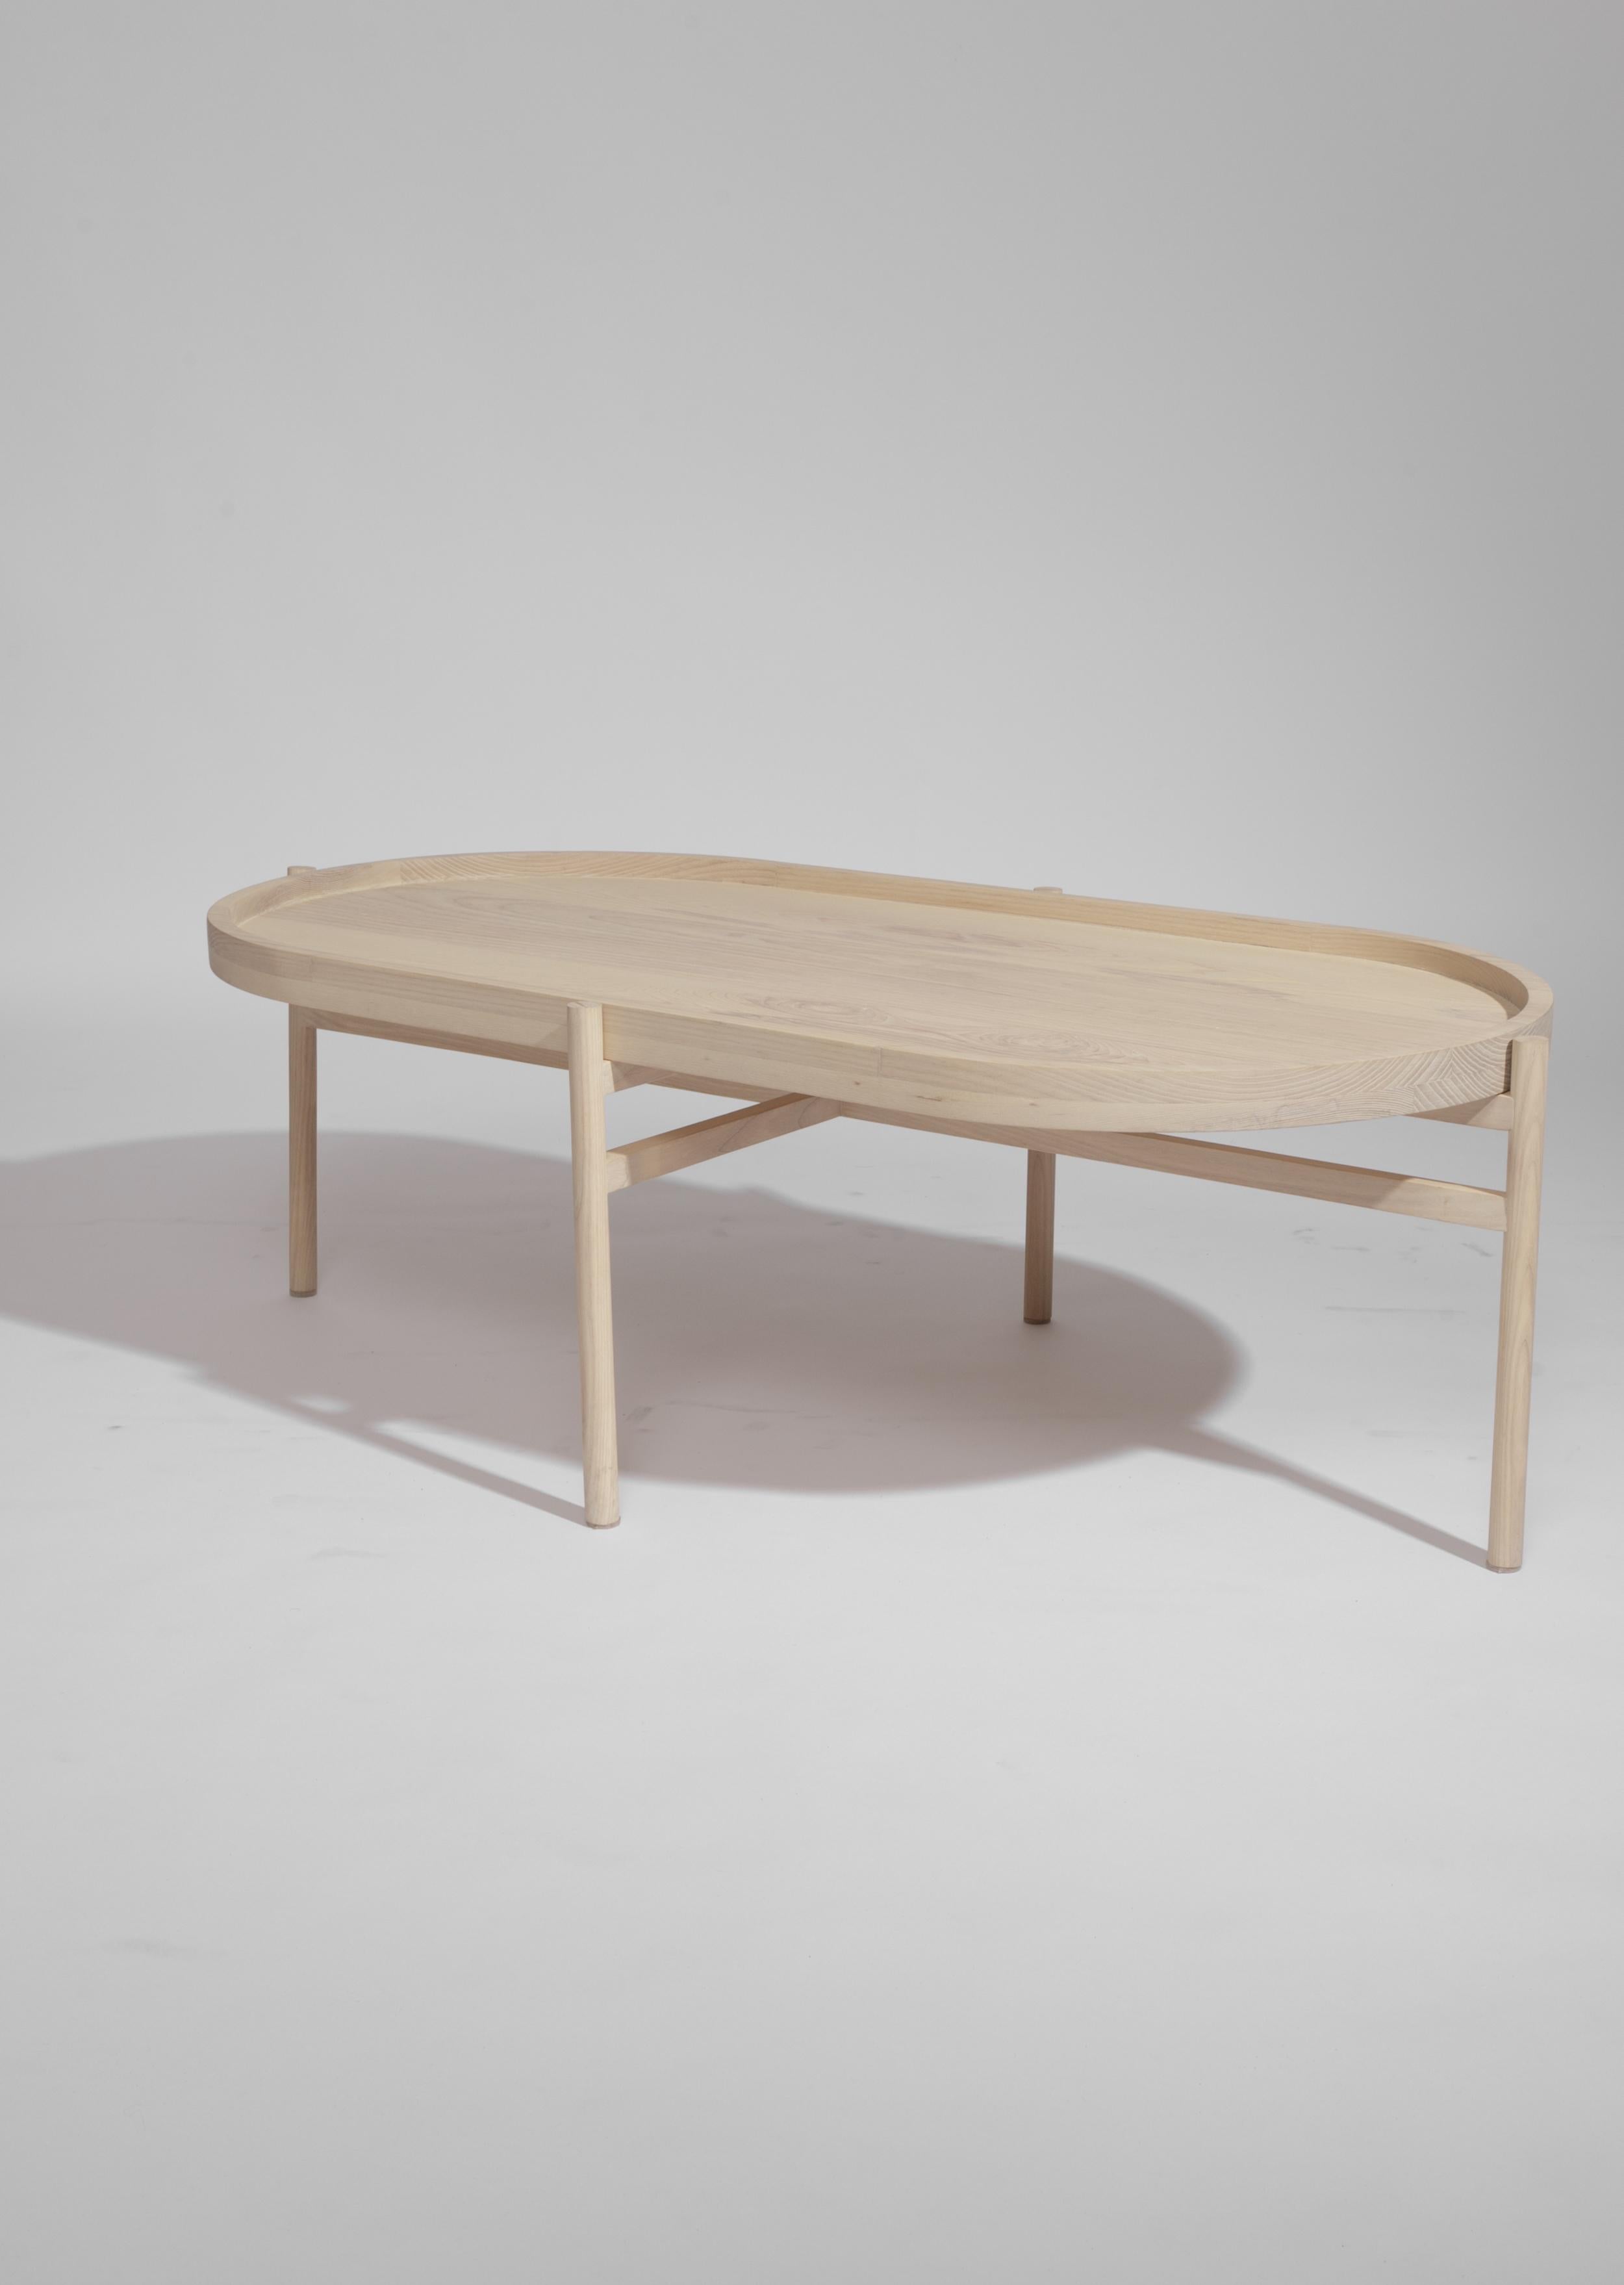 La table basse Marli, au style contemporain, a été conçue à partir de l'interaction et de la conversation qui naissent autour d'une table centrale. Ce meuble est né pour faciliter l'interaction entre les personnes autour de la table. Sa composition